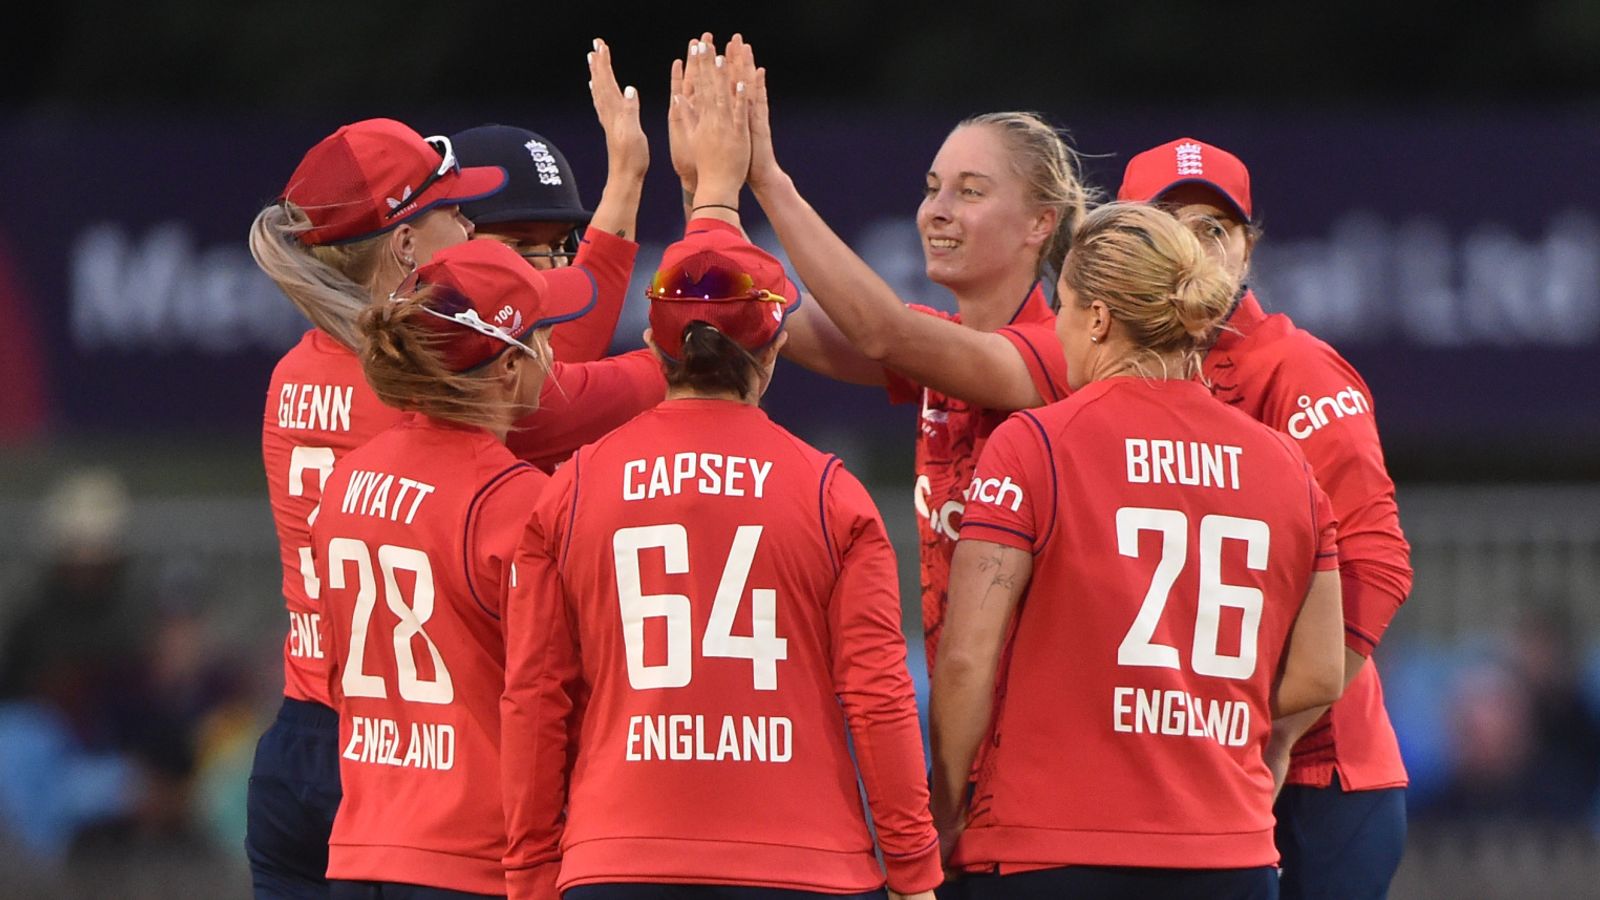 Tim putri Inggris mengalahkan Afrika Selatan di final T20 menunjukkan kekaguman pada remaja 17 tahun Alice Capsey dan Freya Kemp |  berita kriket